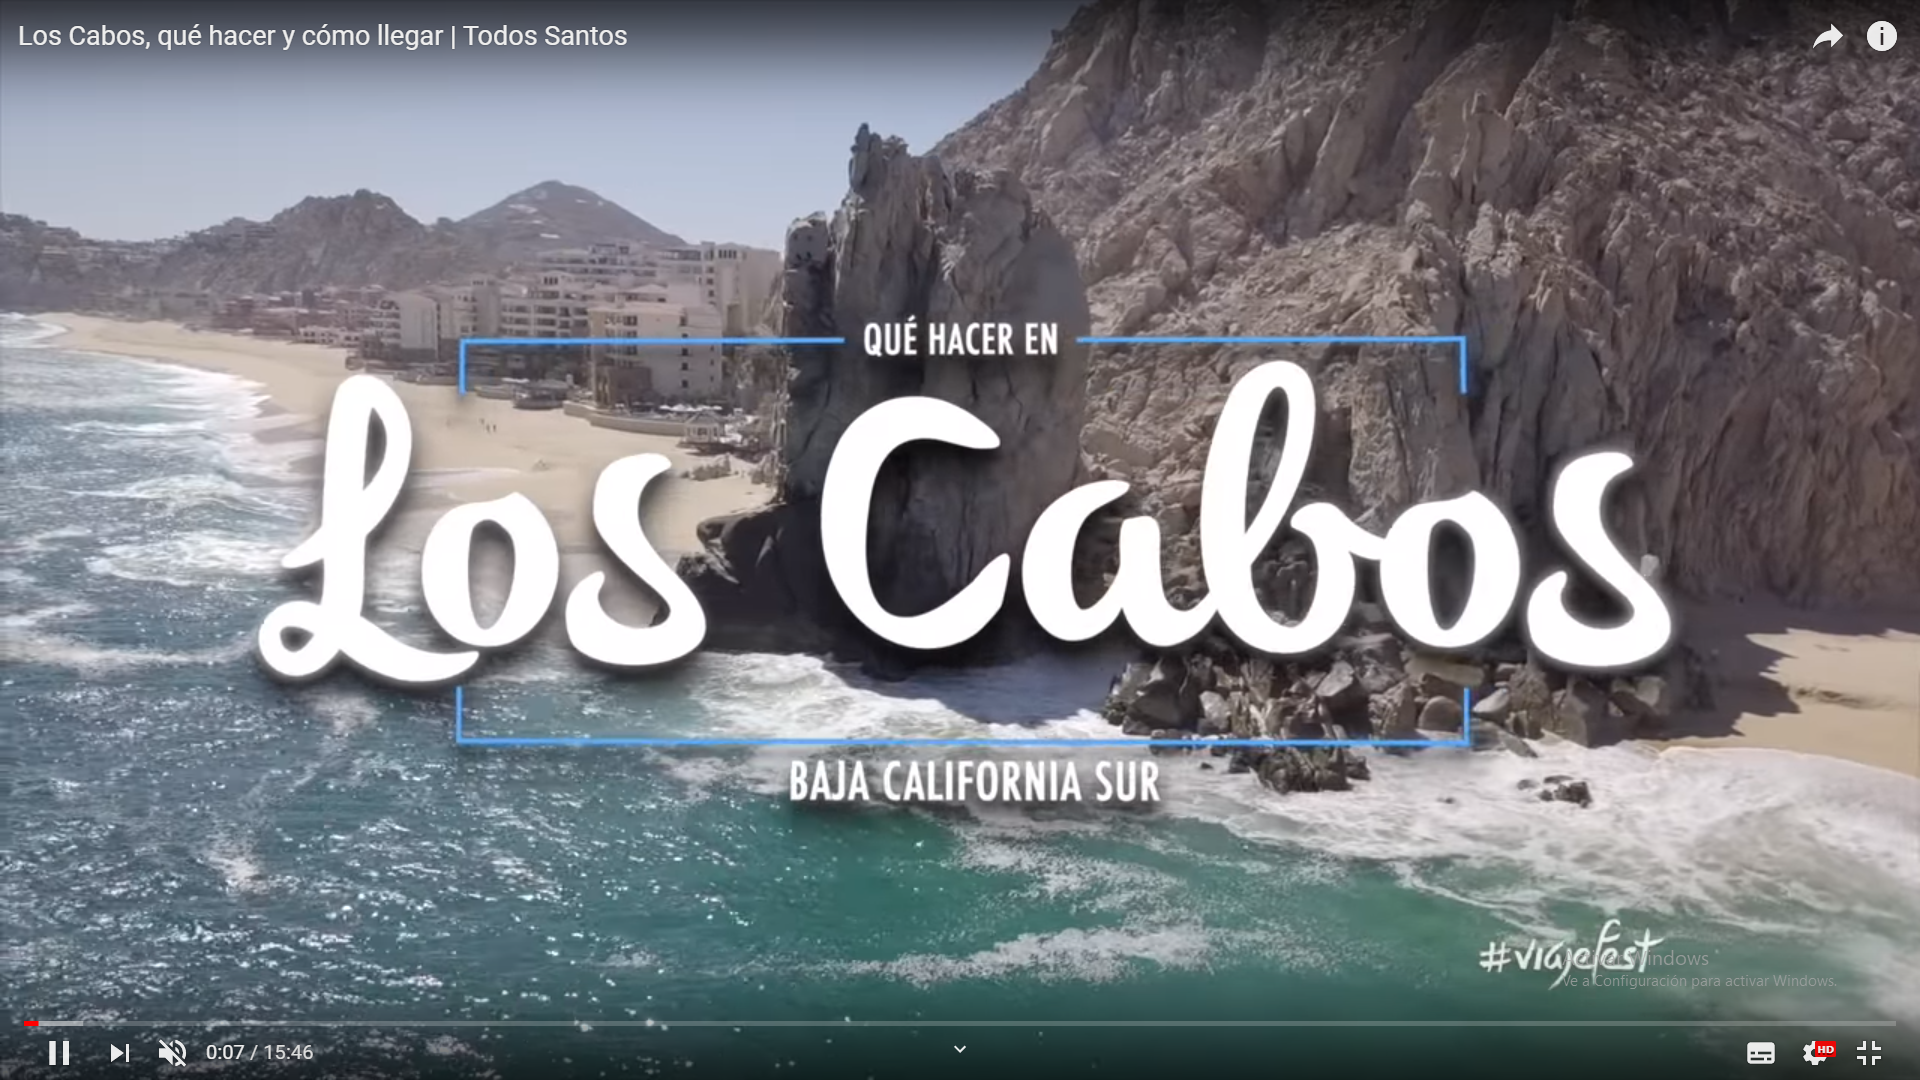 Los cabos (Baja California sur)